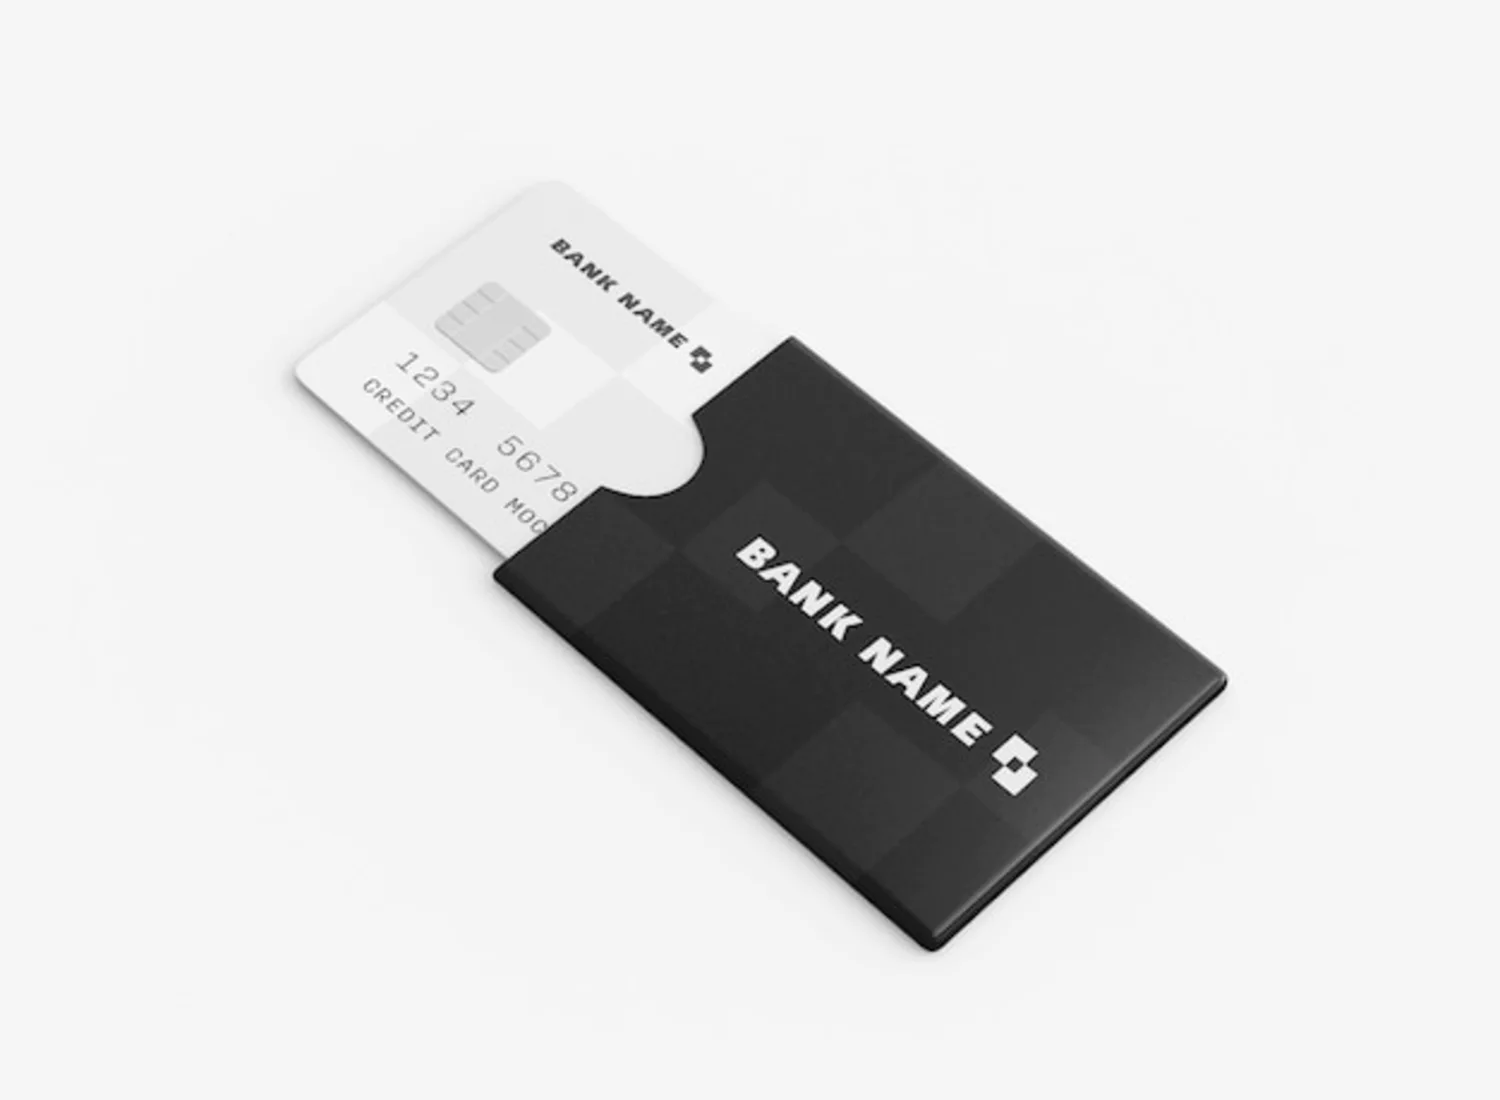 52 信用卡银行卡磁卡IC卡套品牌设计样机[psd]